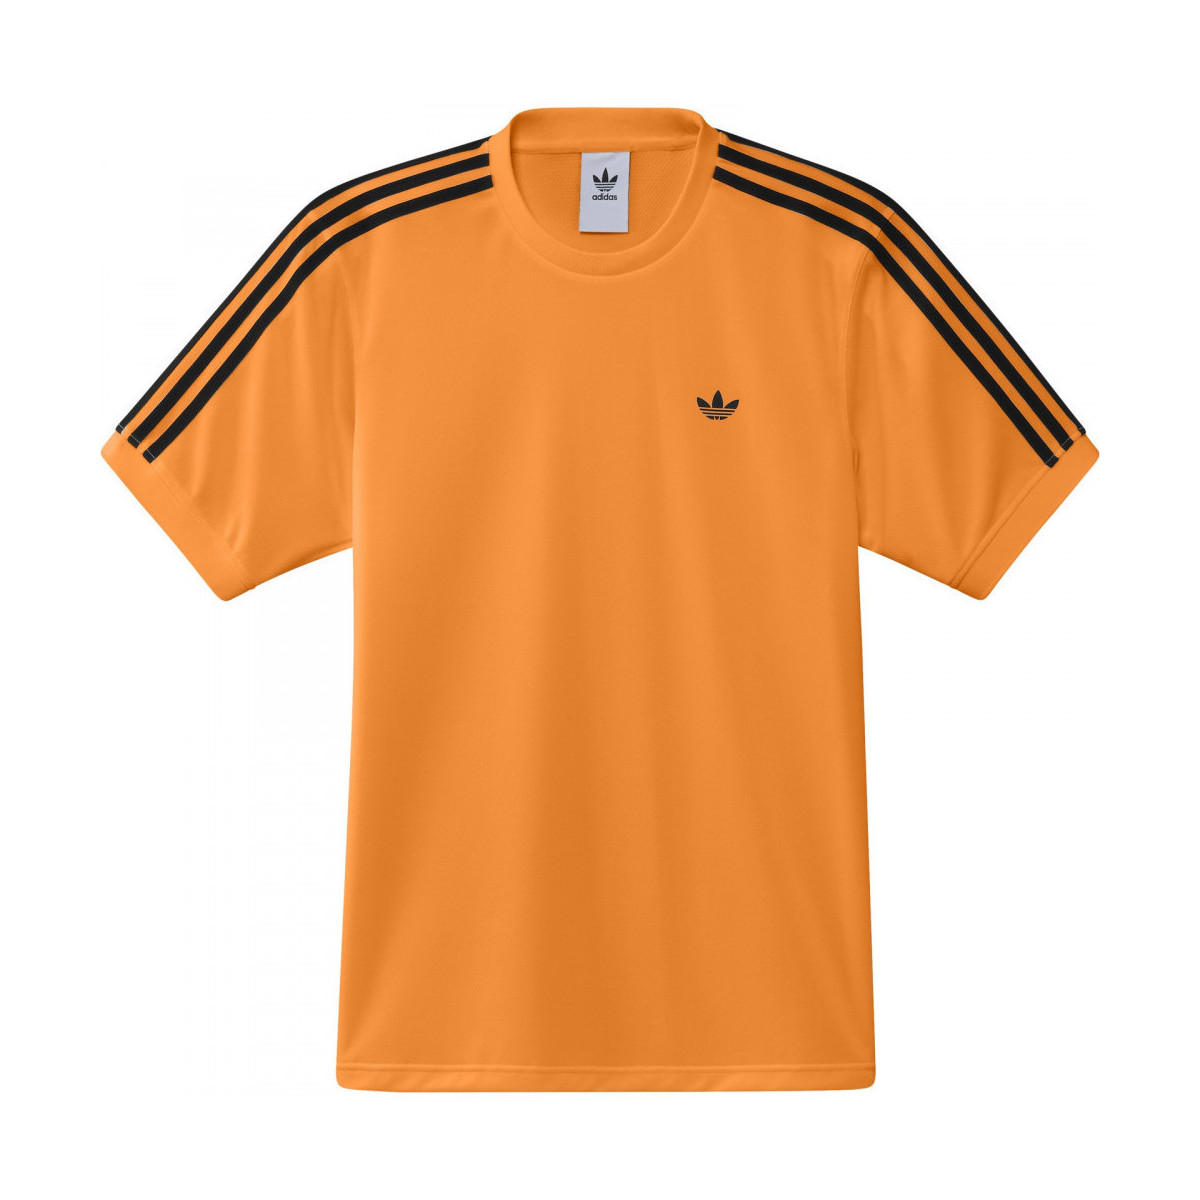 Ruhák Pólók / Galléros Pólók adidas Originals Club jersey Narancssárga